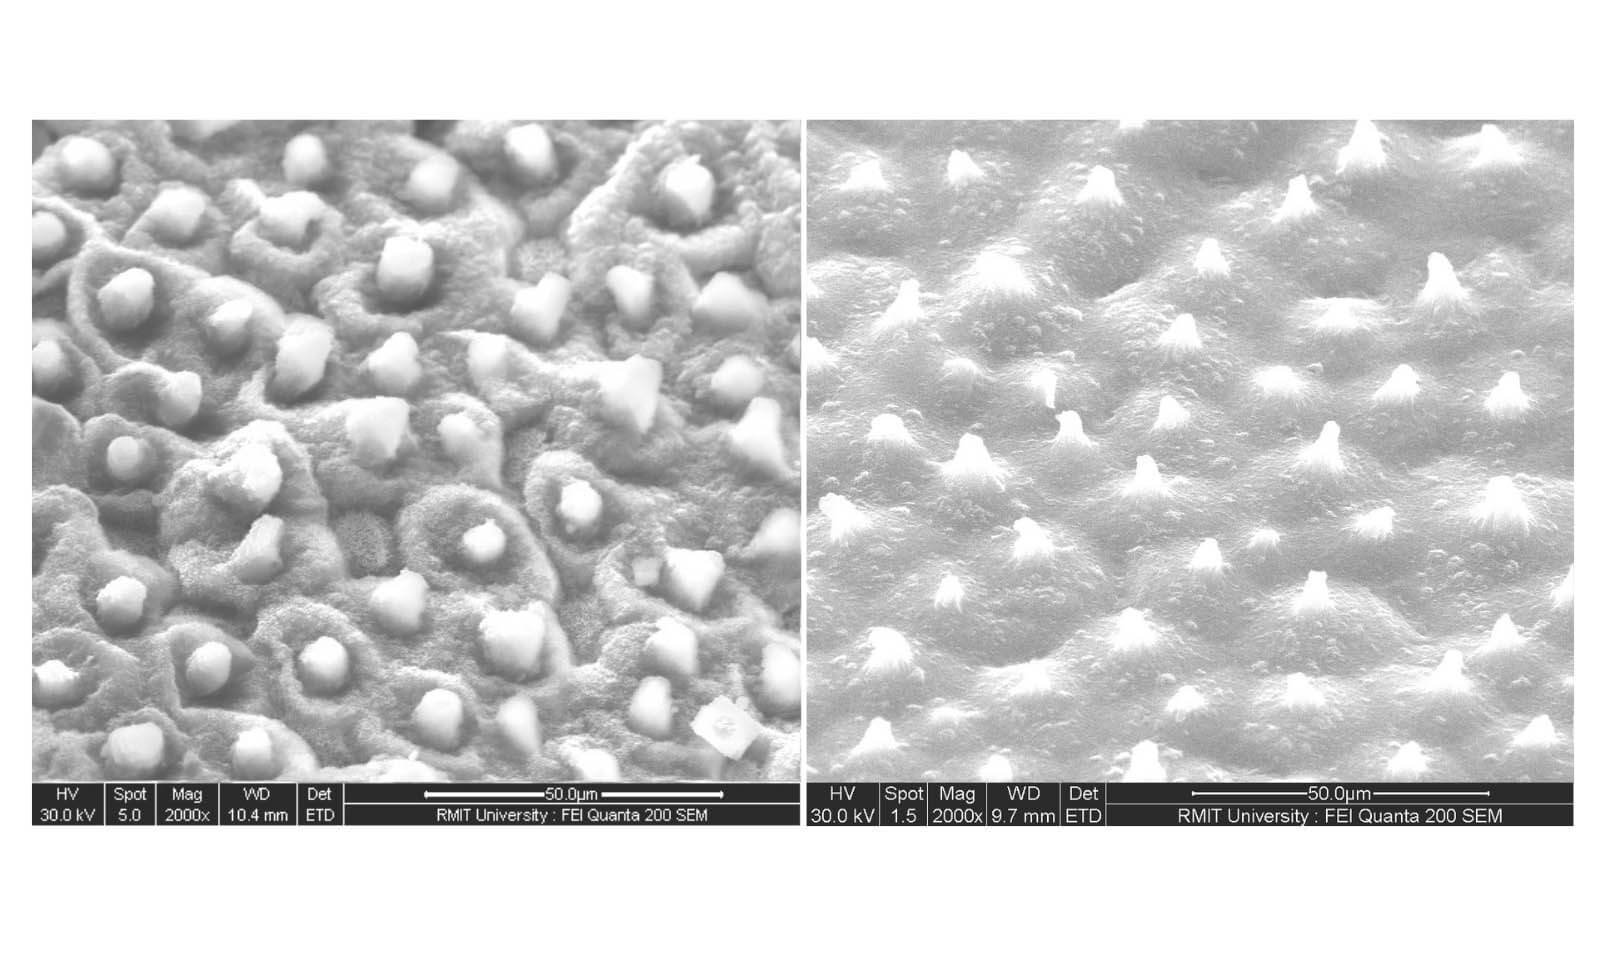 على اليسار - صورة لسطح ورقة اللوتس؛ على اليمين - صورة لسطح البلاستيك. بإذن من الباحثين